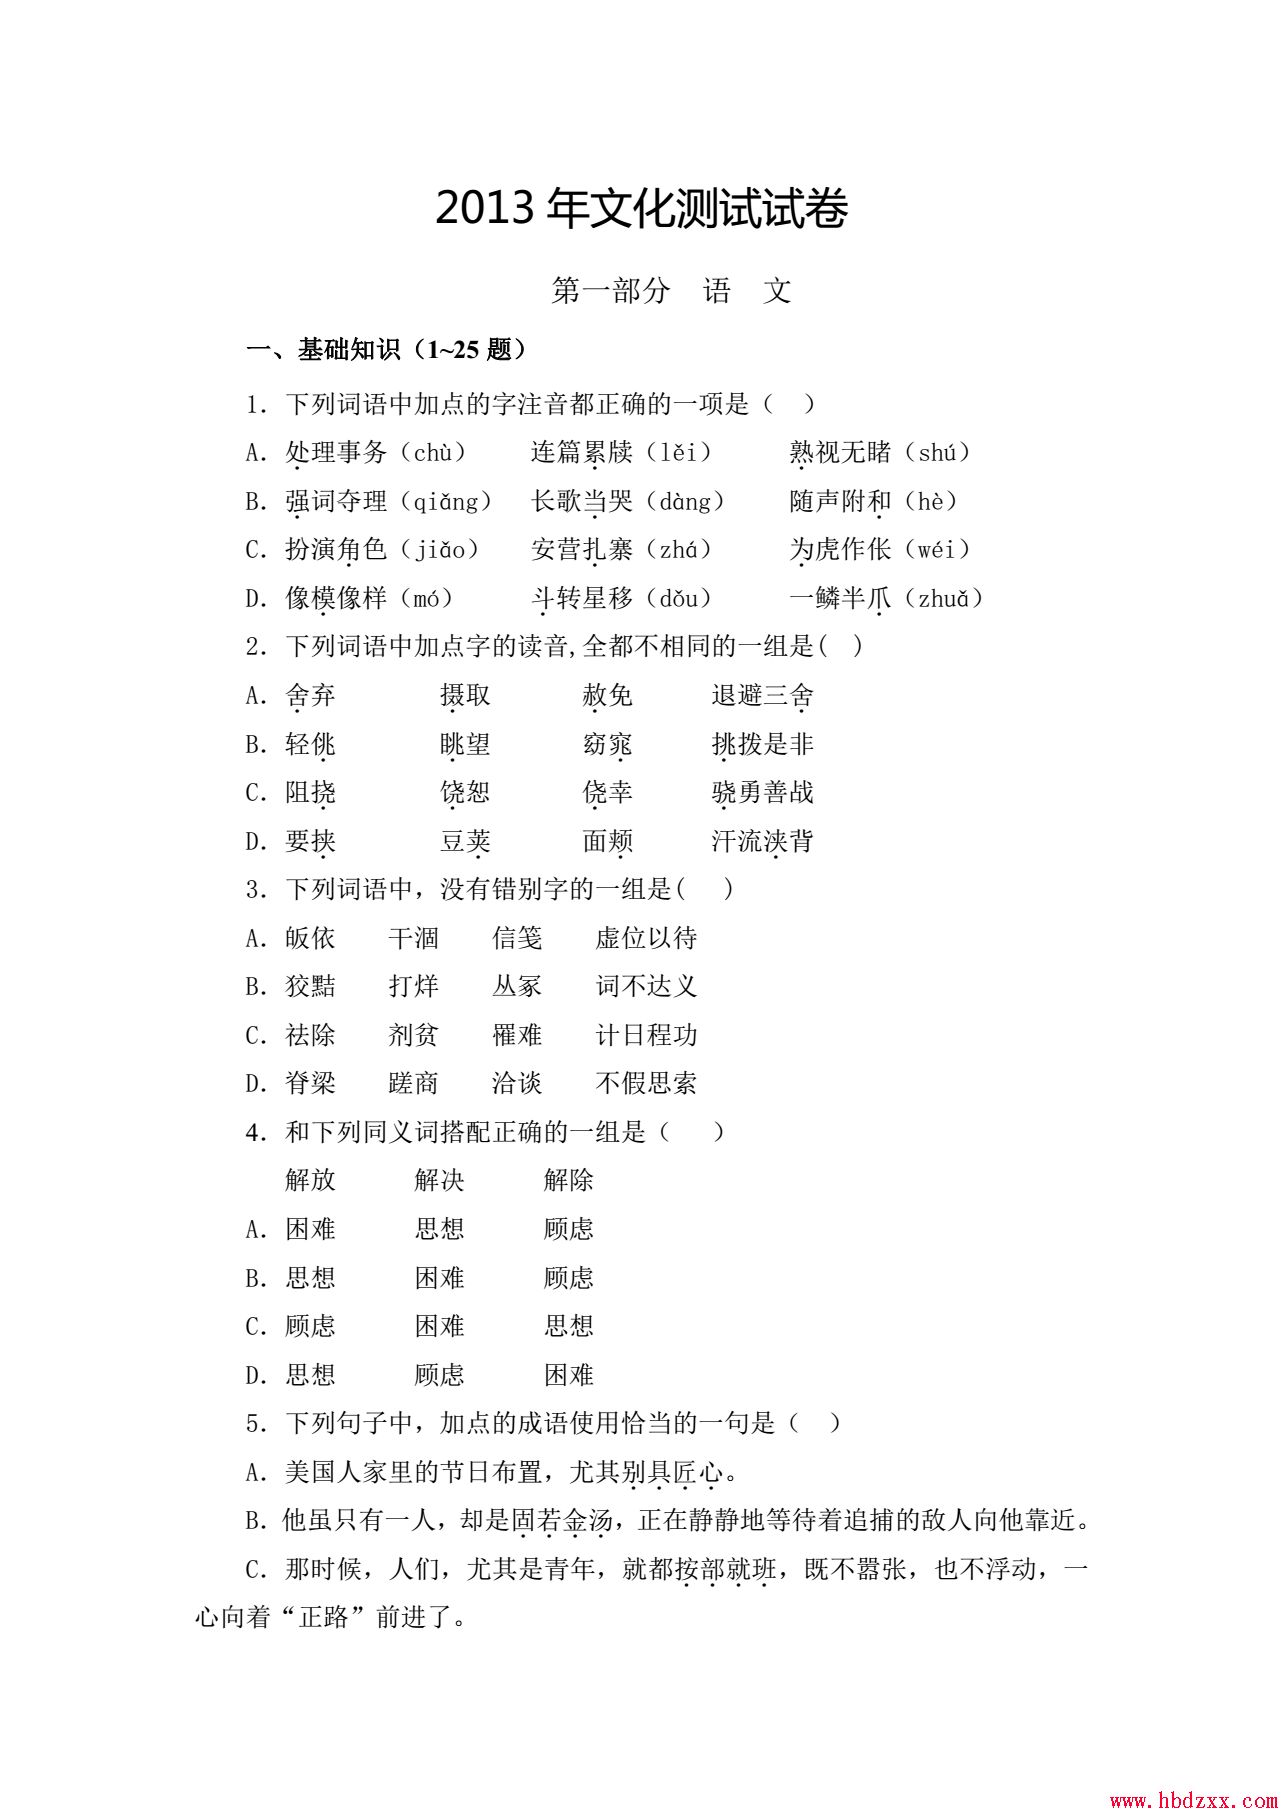 河北App职业技术学院2013年语文单招试题